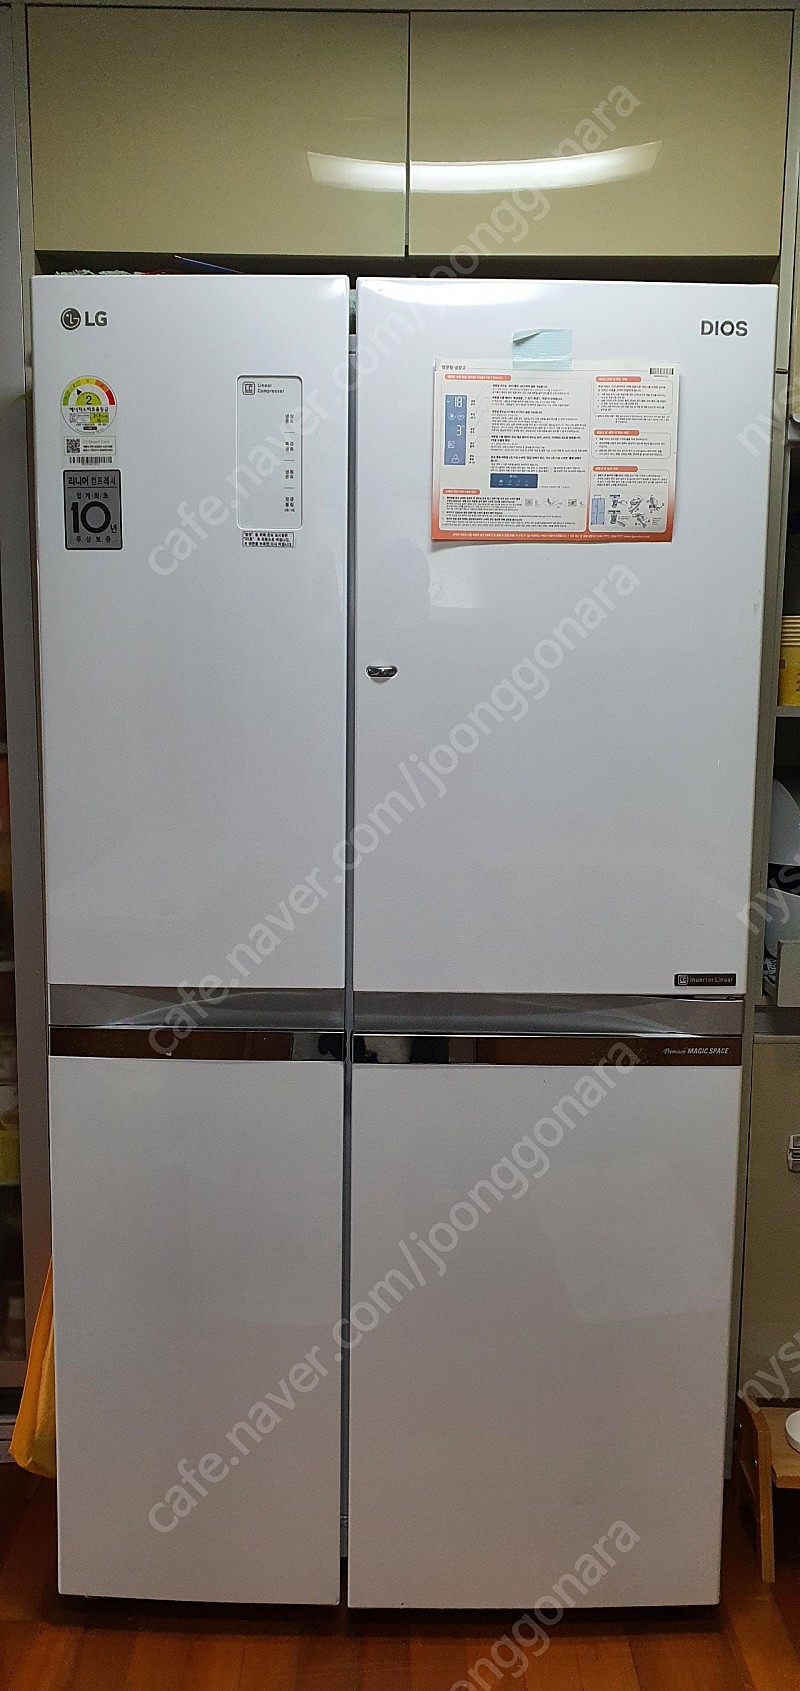 LG디오스 냉장고 (830리터)양문형 소하동